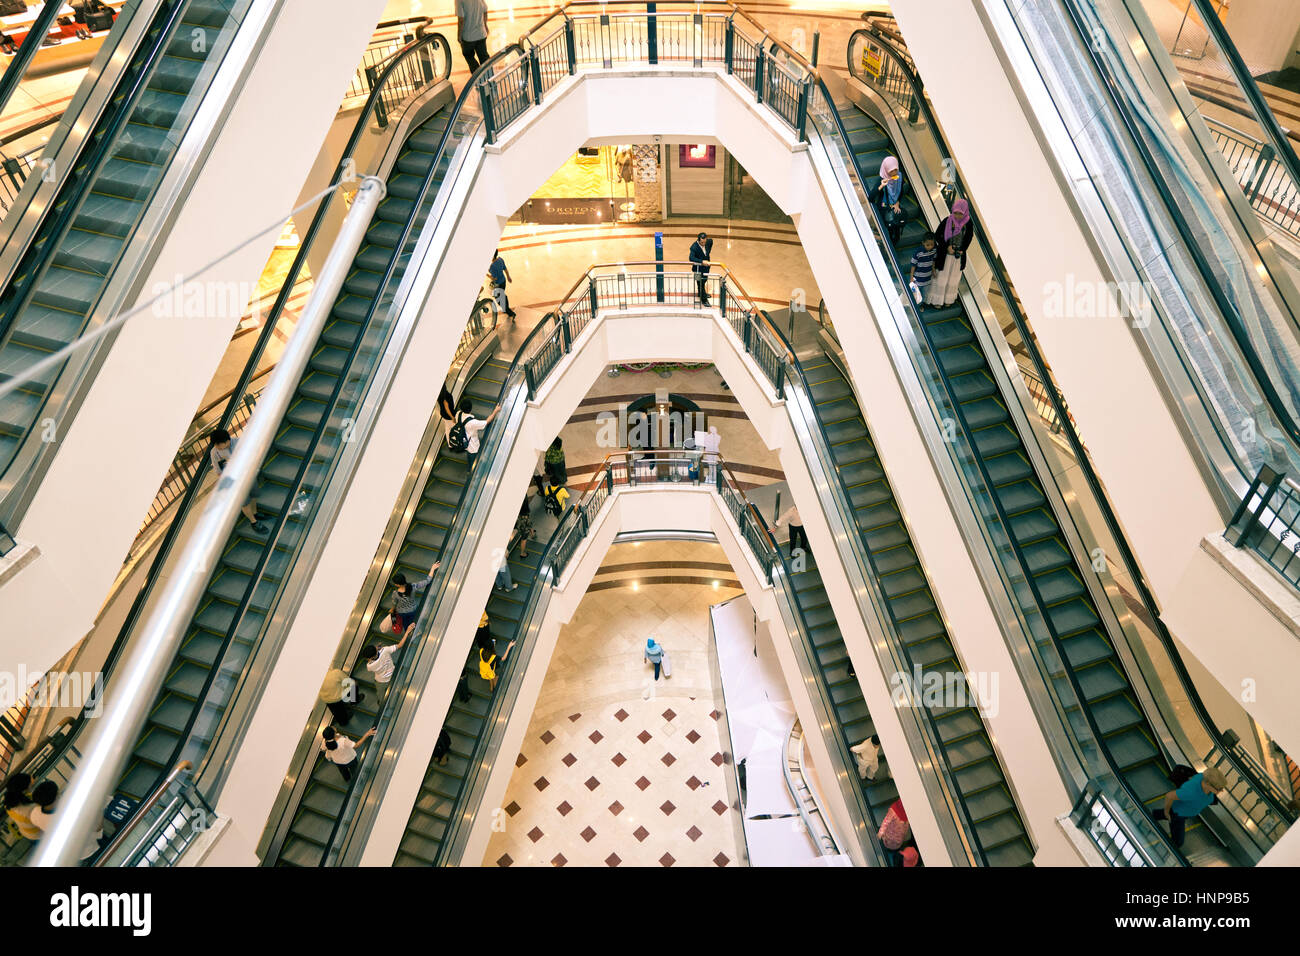 Elevato angolo di visione del popolare Suria KLSS shopping mall situato a Kuala Lumpur downtown, Malaysia Foto Stock